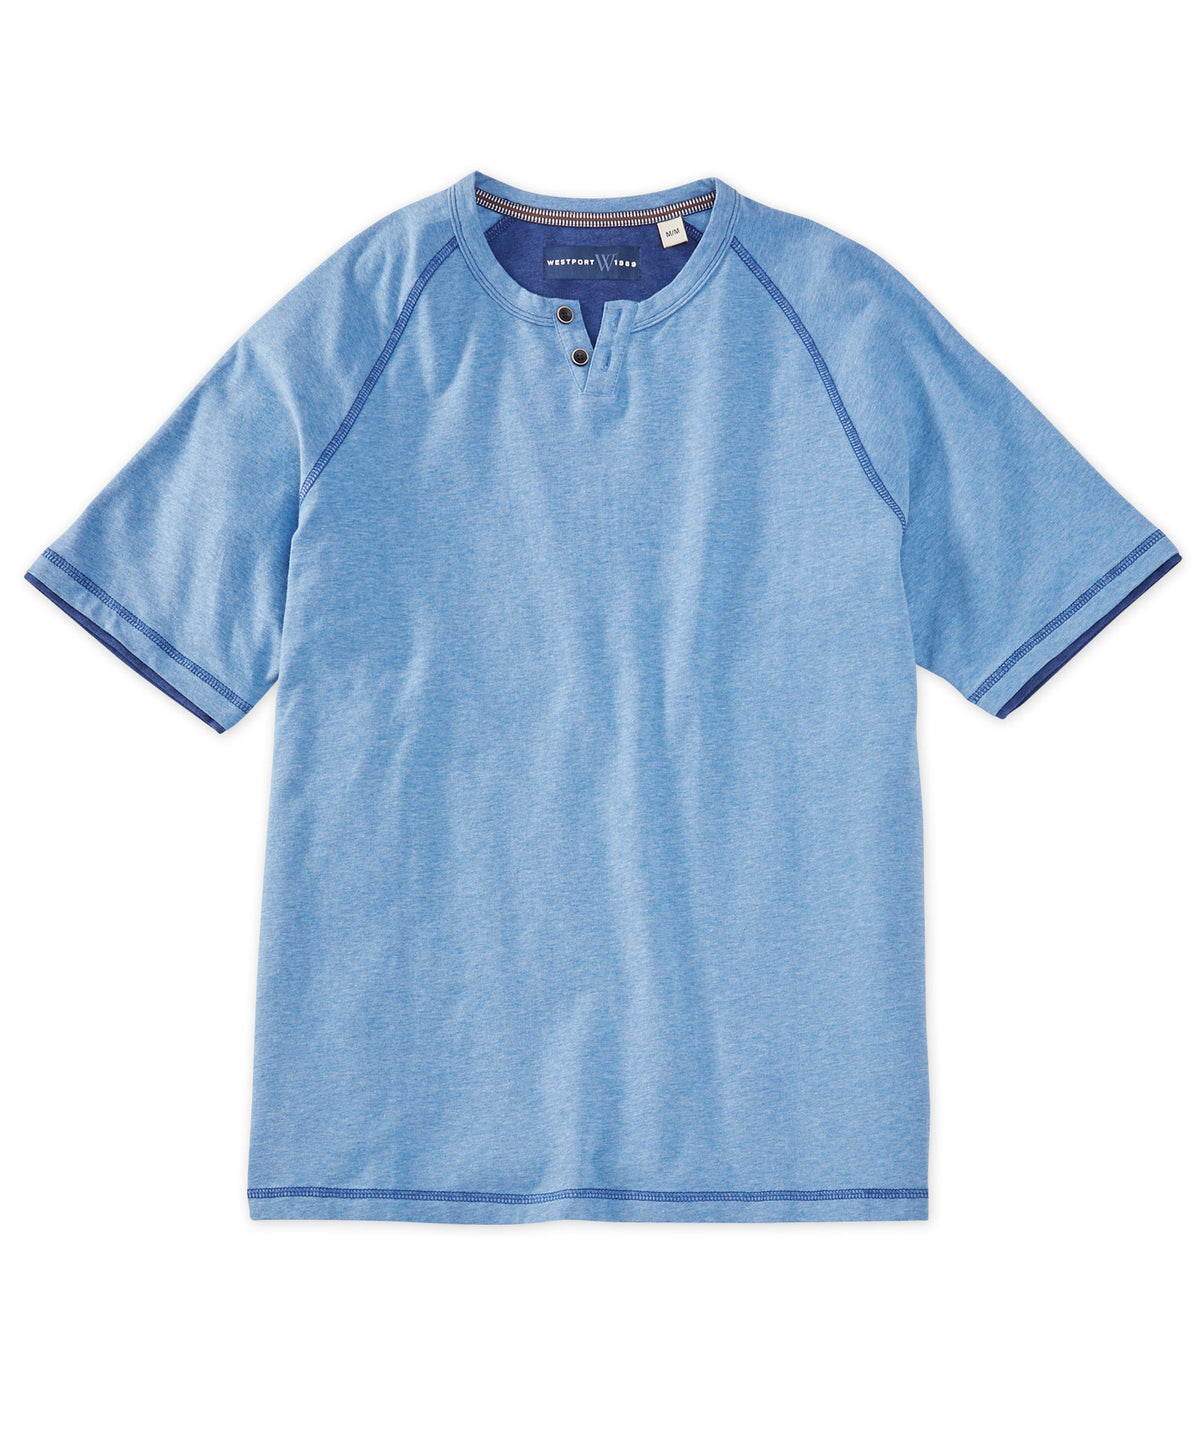 Westport 1989 Short Sleeve Notch Henley Tee Shirt